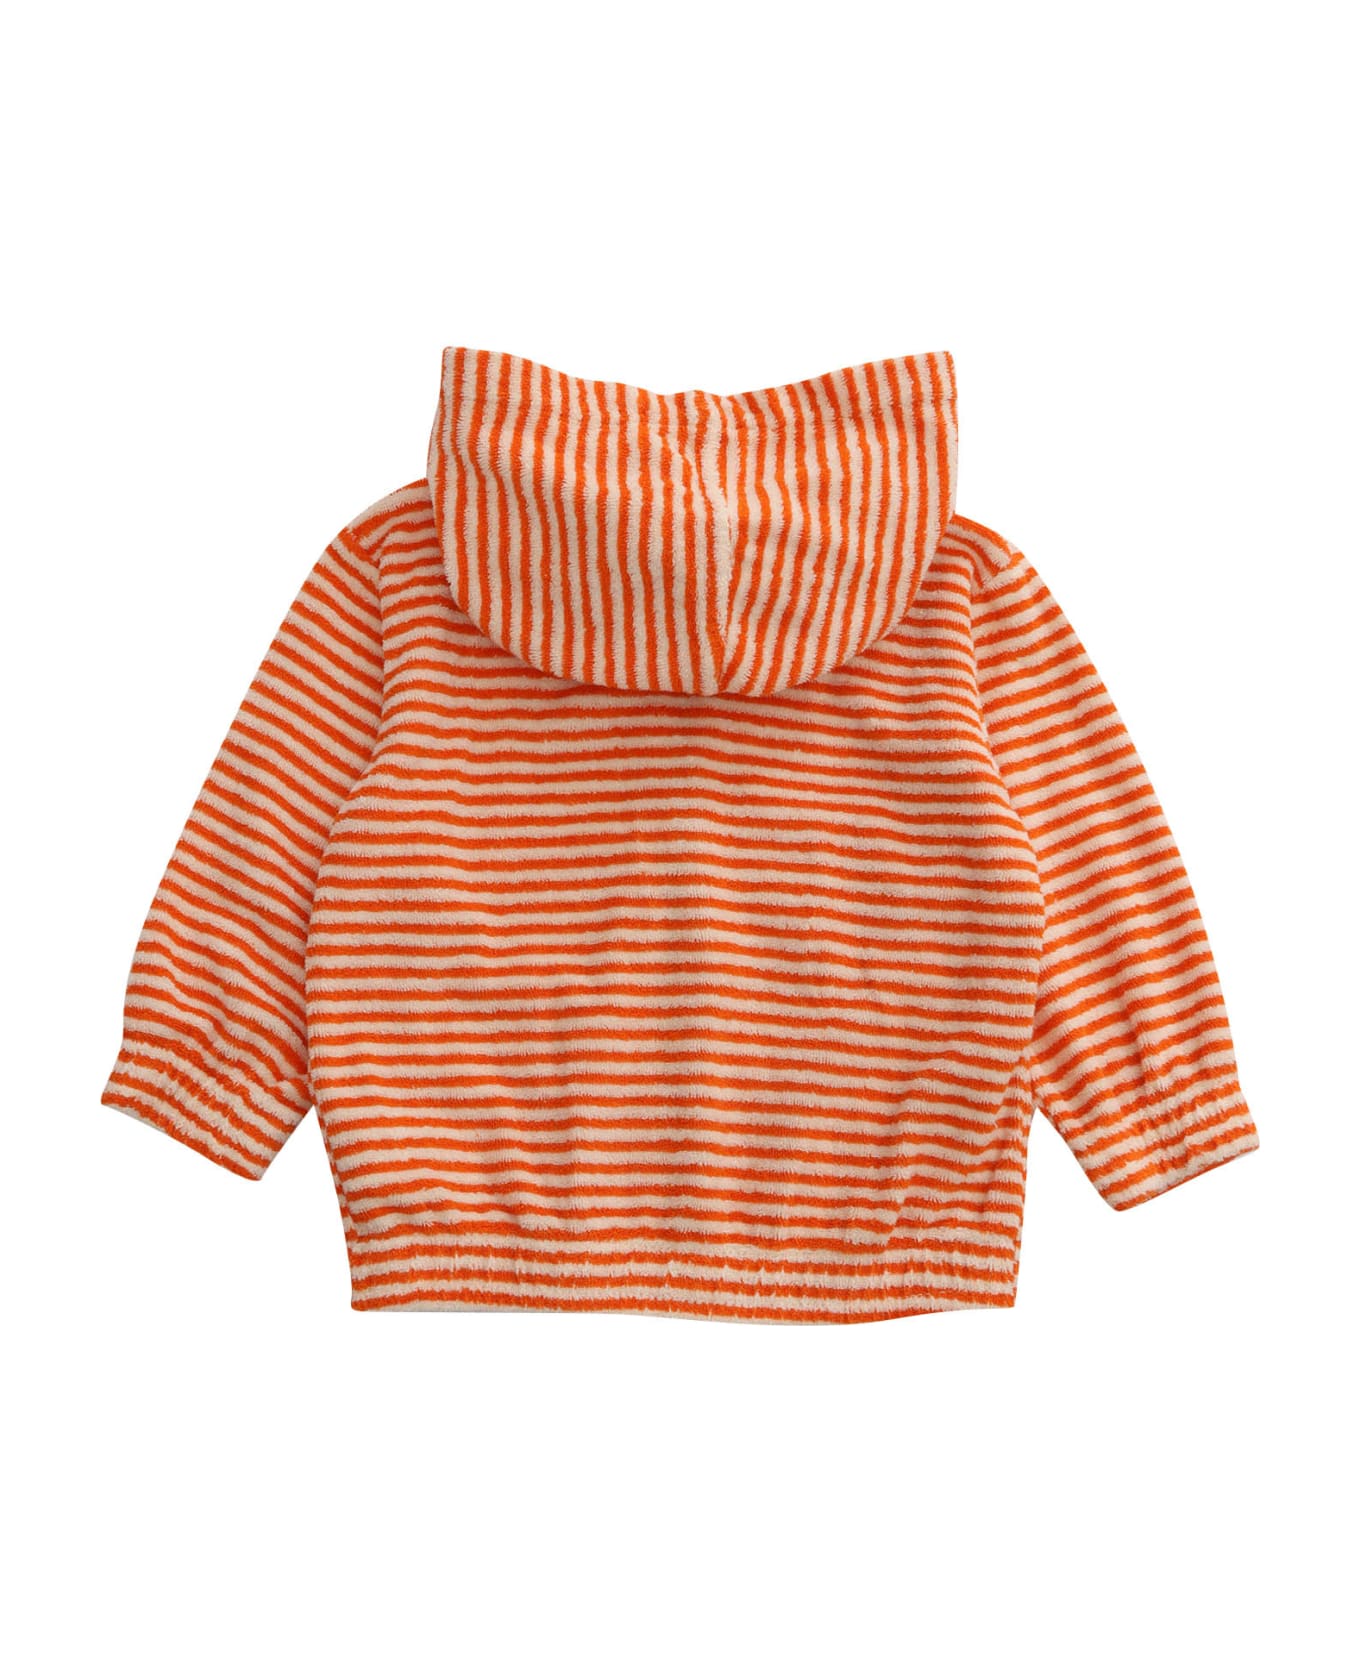 Bobo Choses Orange Hooded Sweatshirt - ORANGE